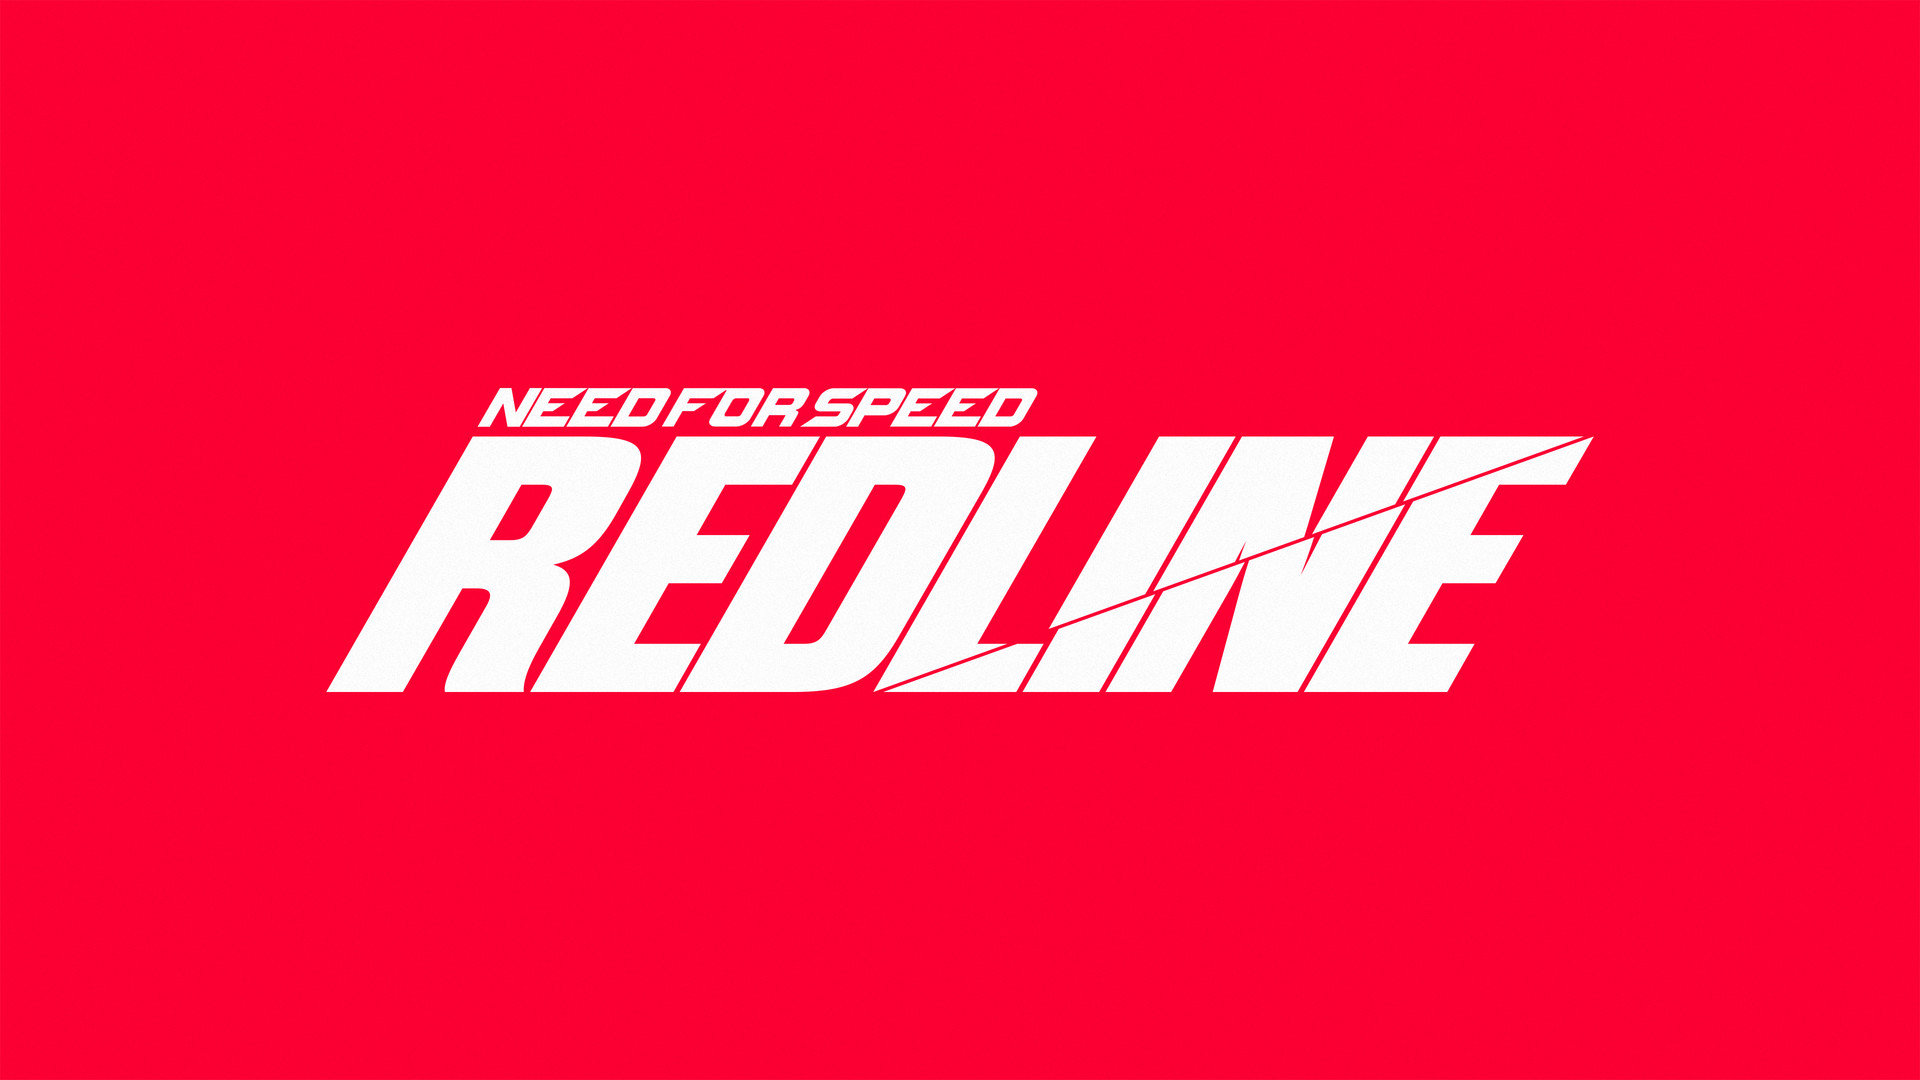 ArtStation - Need for Speed Redline - #NFSConcept